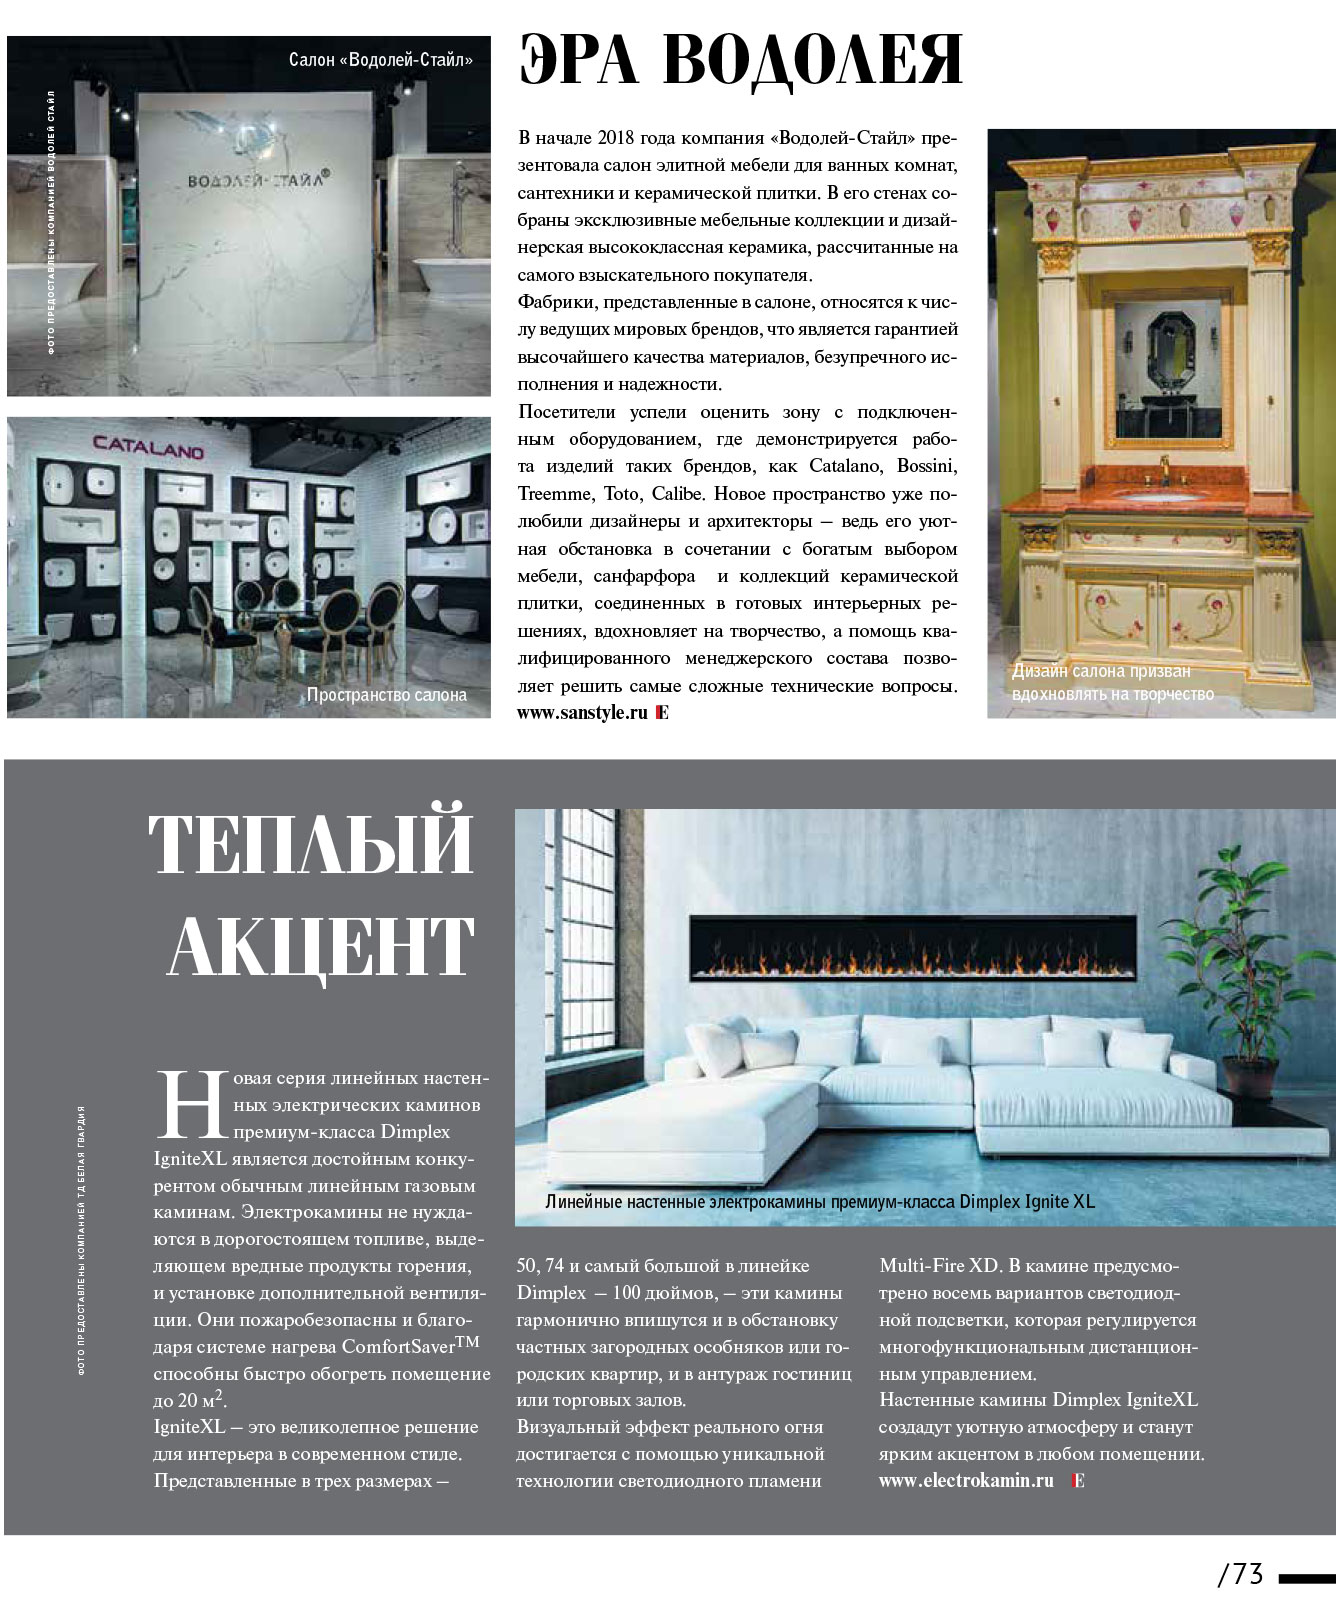 Электрический камин в журнале «ELITE interior» №139, март 2018